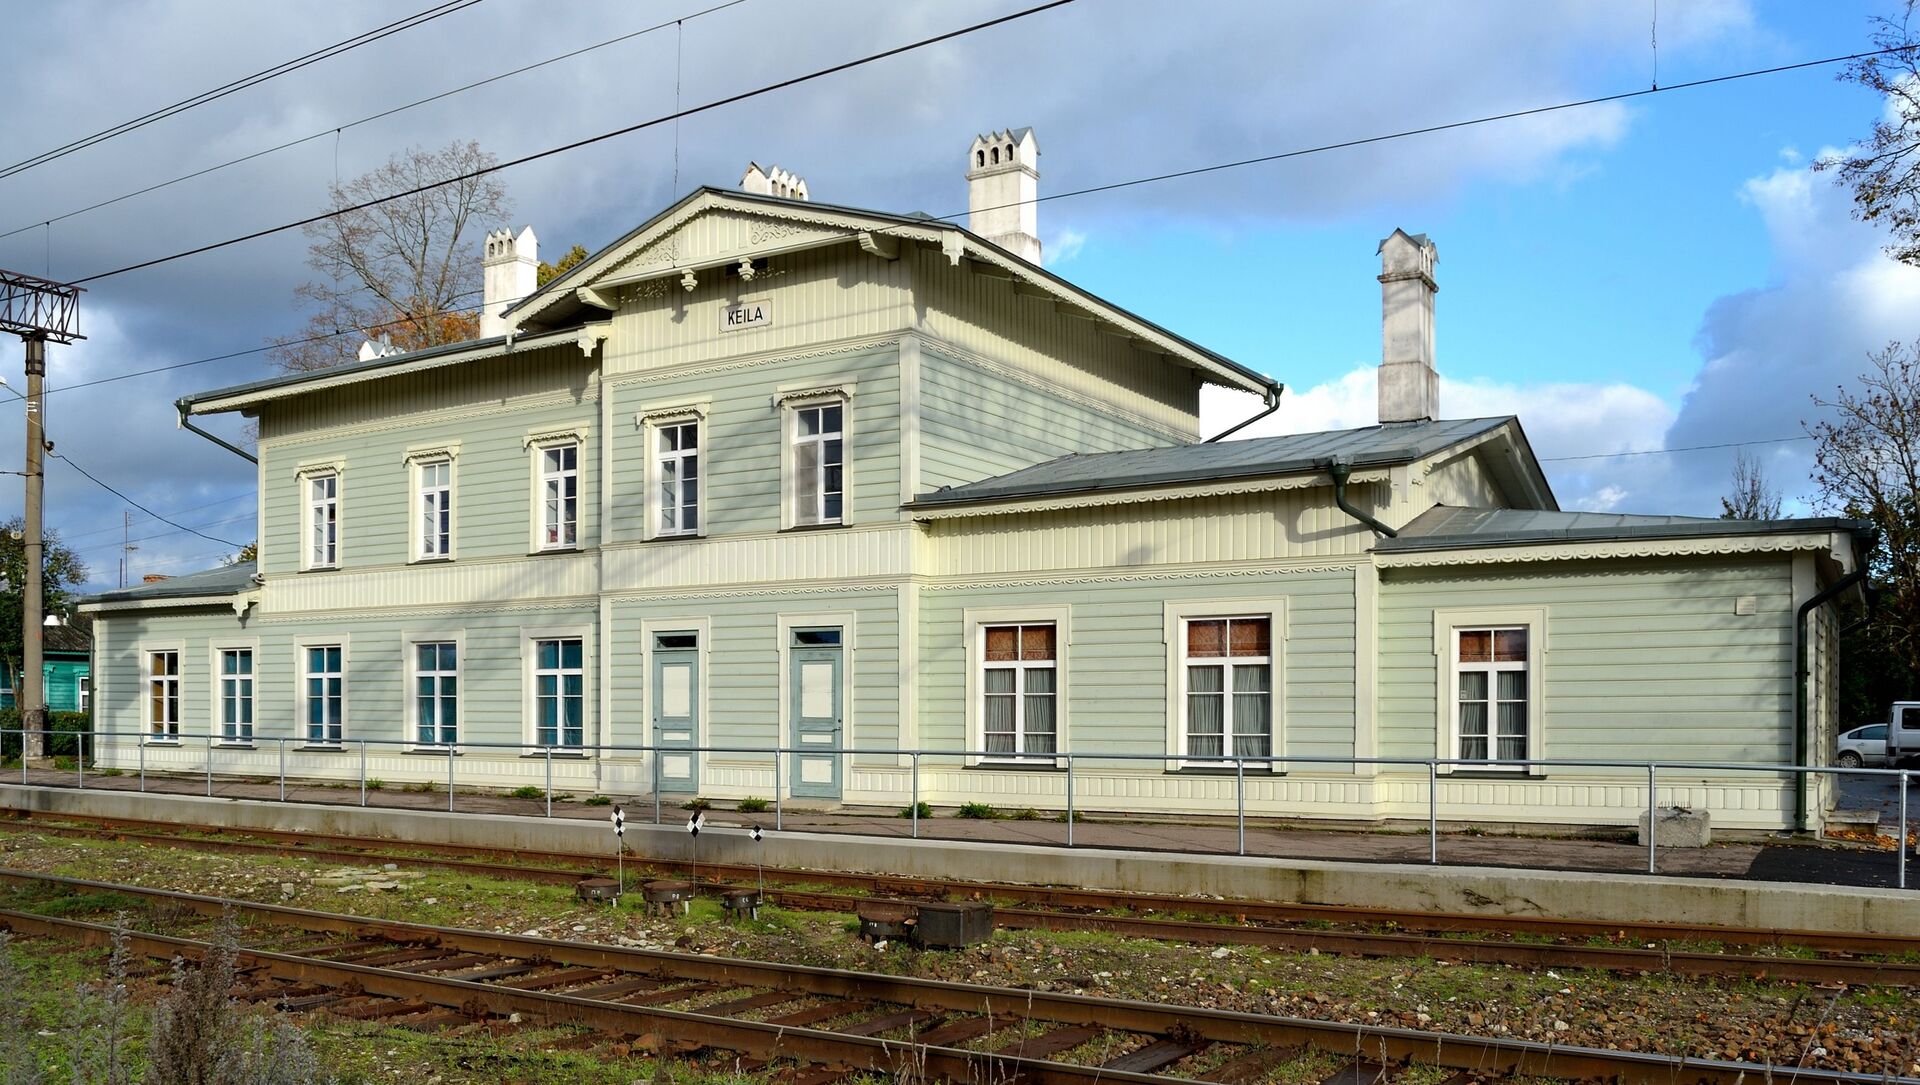 Железнодорожная станция в городе Кейла, Эстония - Sputnik Литва, 1920, 15.03.2021